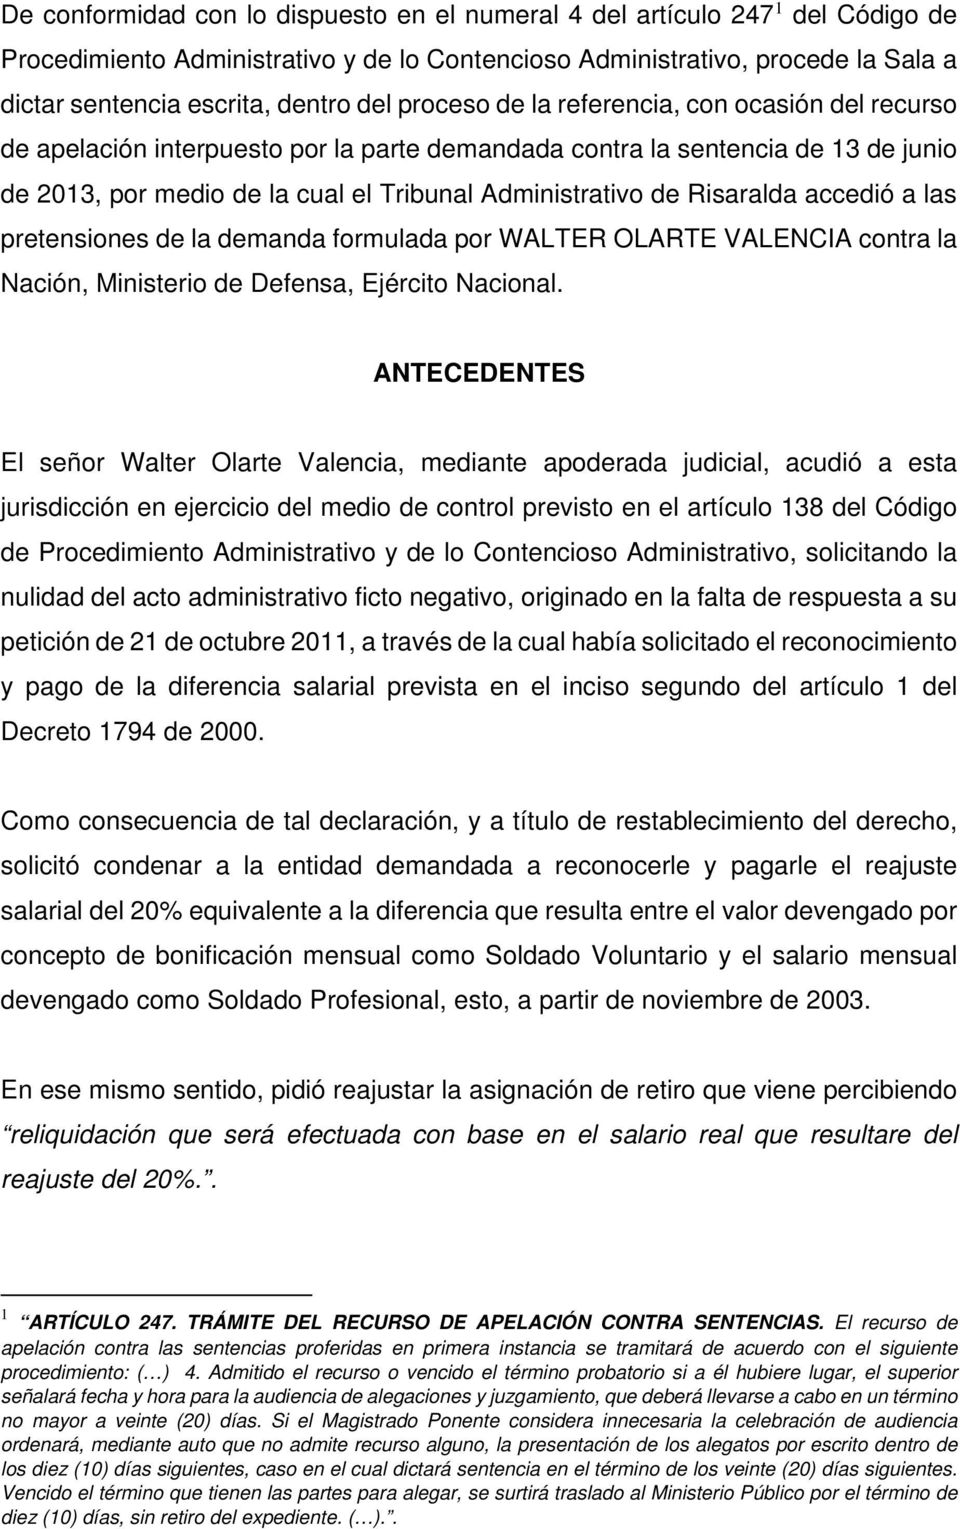 Risaralda accedió a las pretensiones de la demanda formulada por WALTER OLARTE VALENCIA contra la Nación, Ministerio de Defensa, Ejército Nacional.